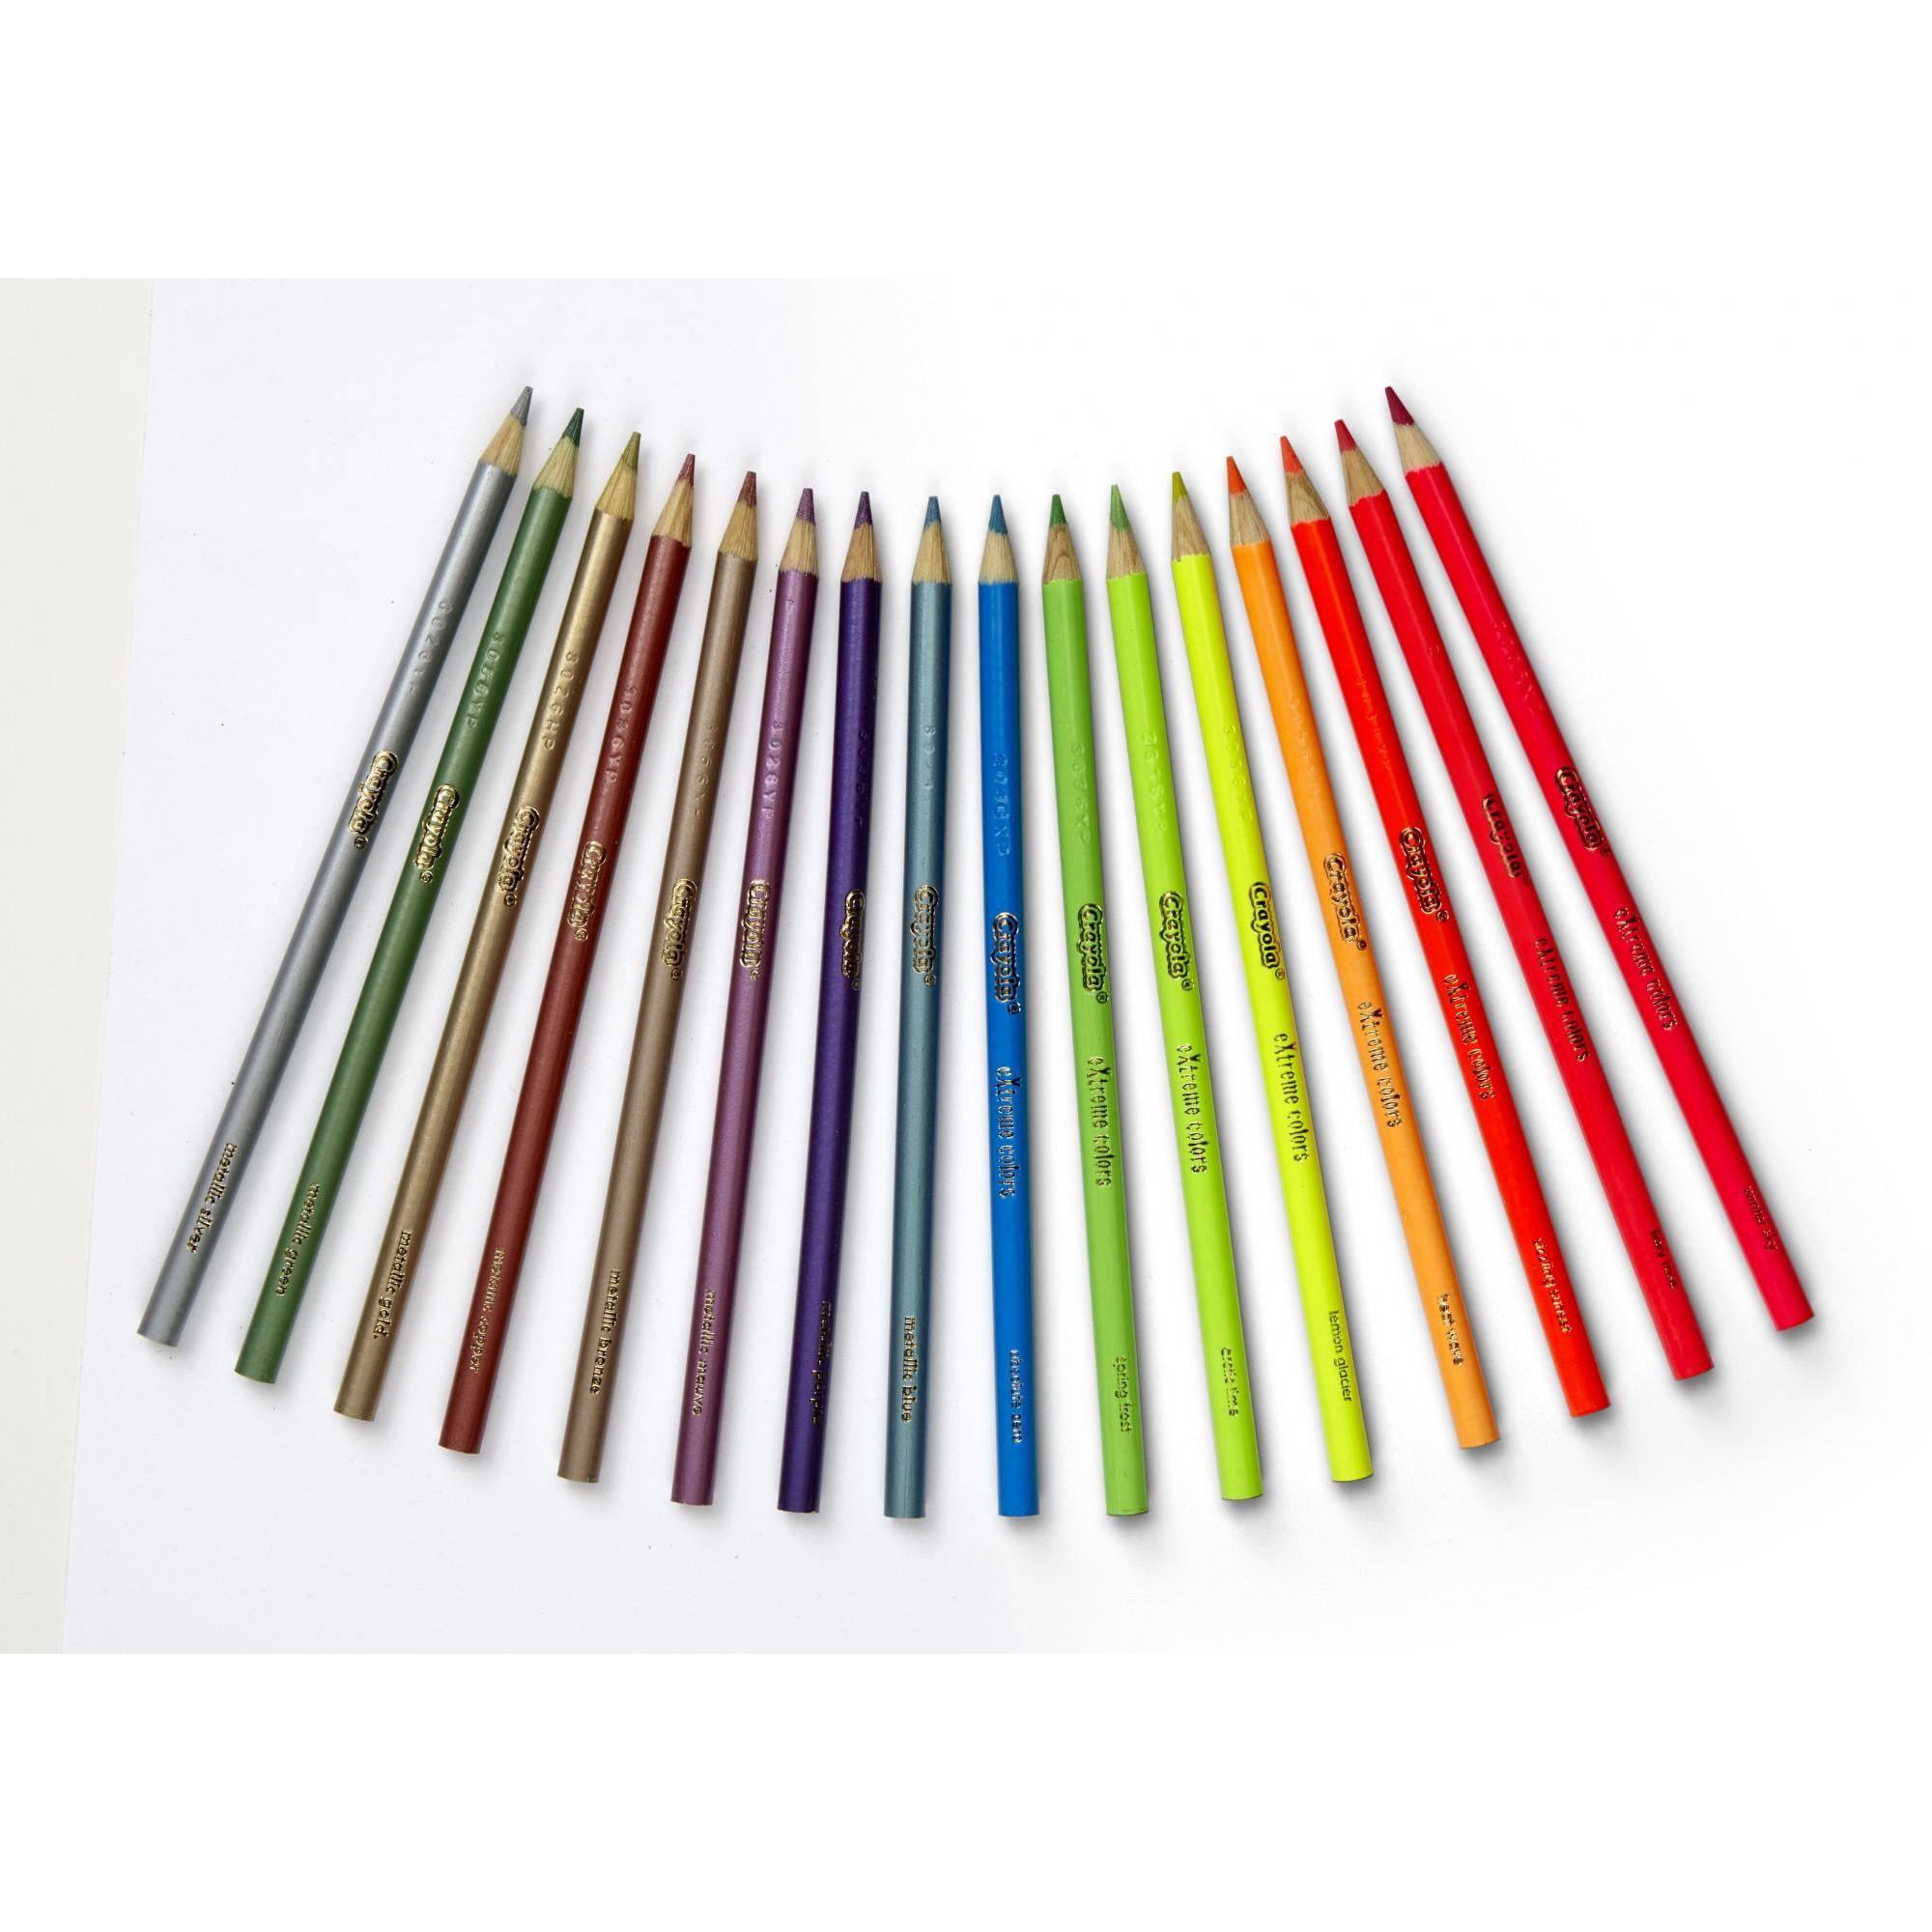 Crayola Color Art Pencils With Edge Multicolor 16 NonToxic Neons Metallics 